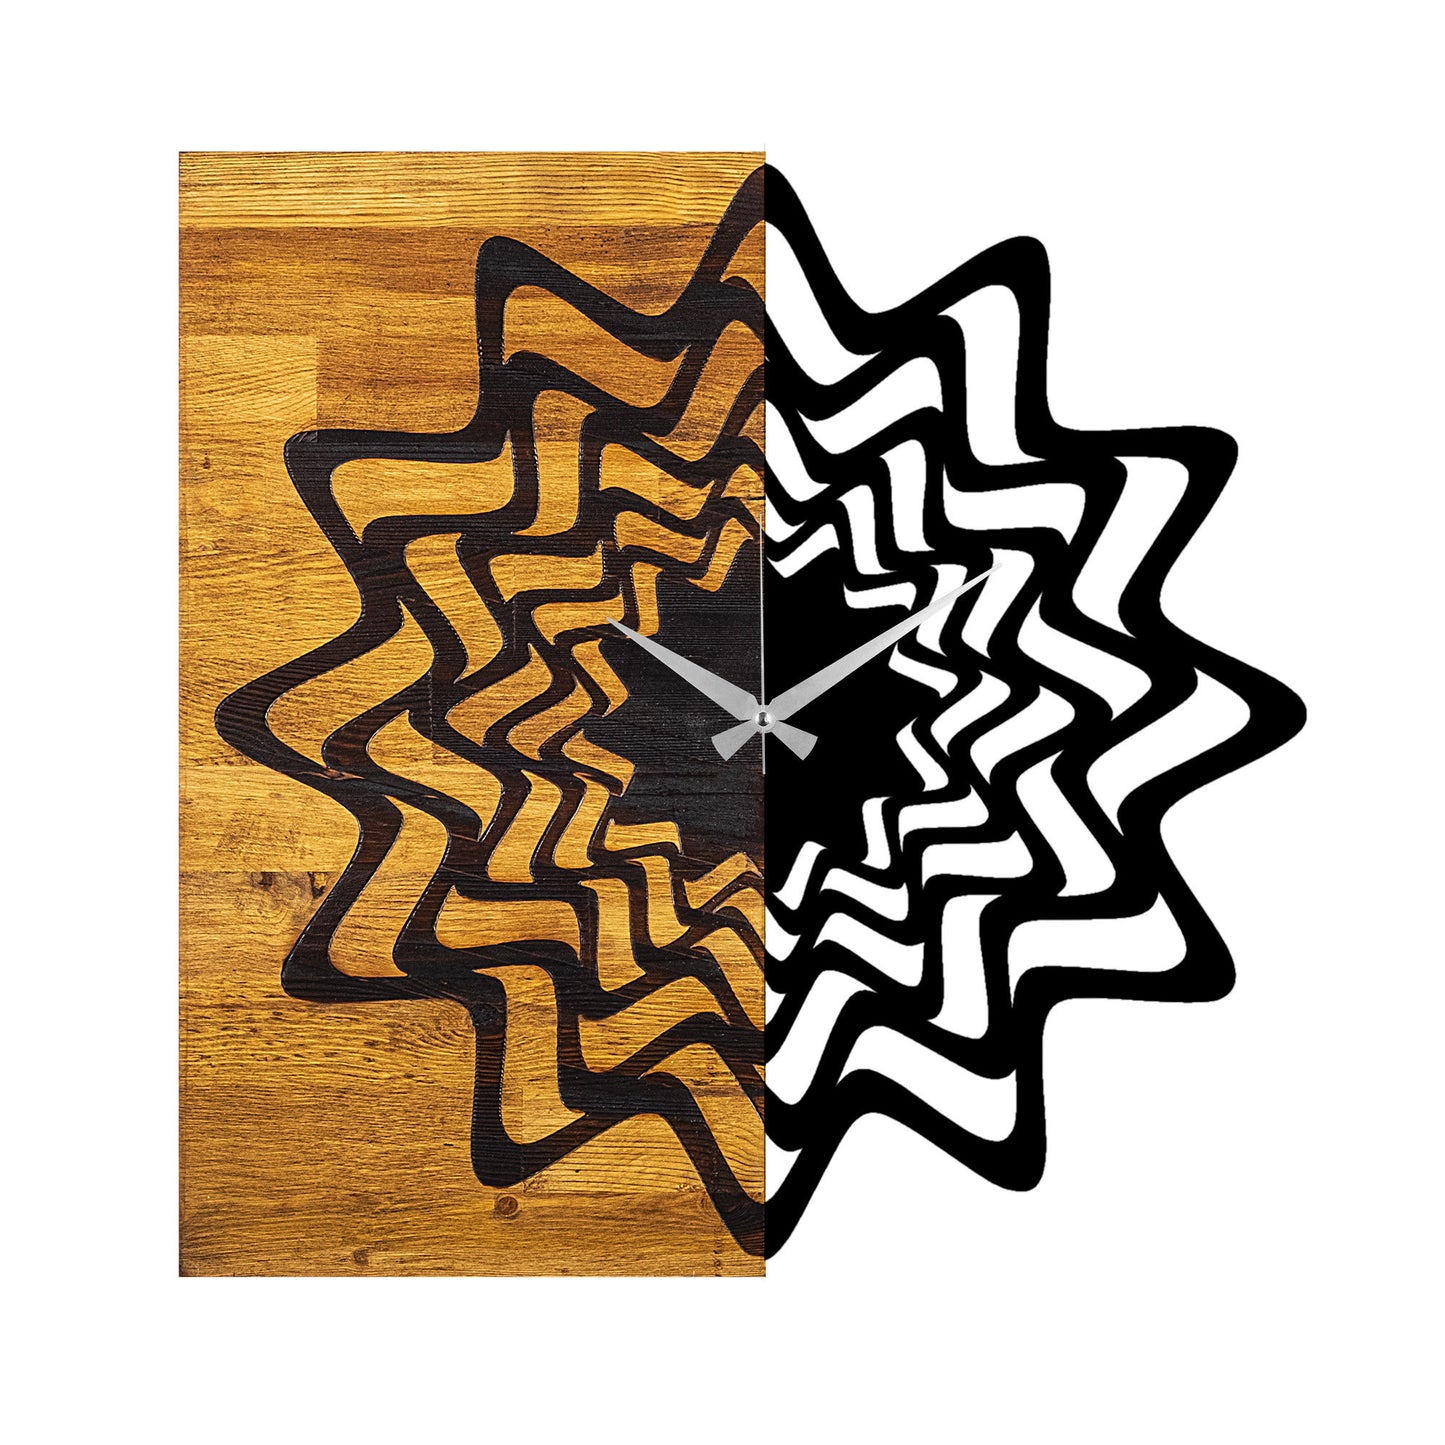 Wooden Clock 21 - Decorative Wooden Wall Clock